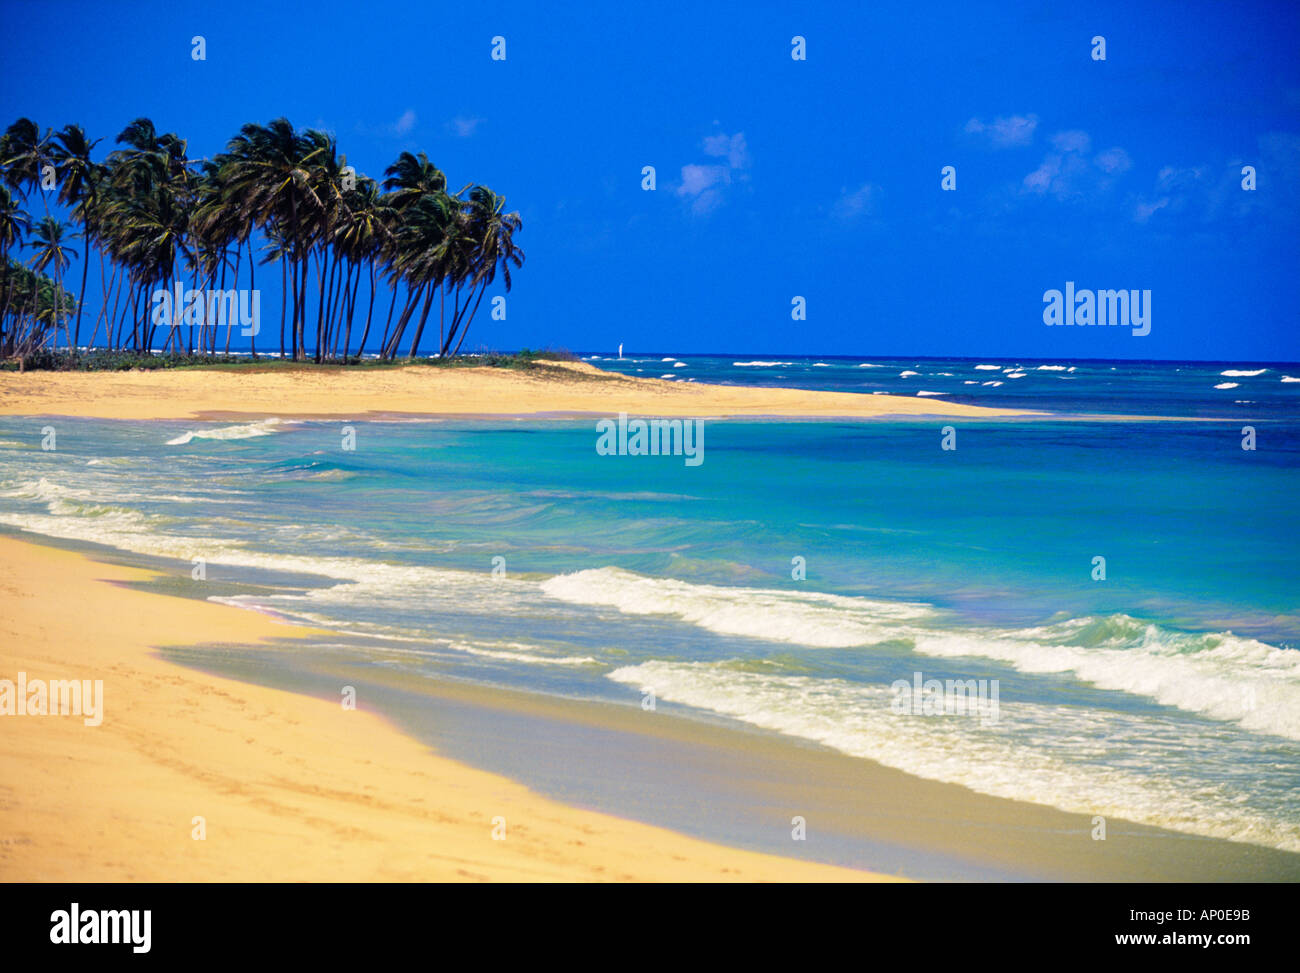 Les vagues se brisant sur la plage de sable blanc sous un ciel bleu avec vert luxuriant de palmiers à Punta Cana, République Dominicaine Banque D'Images